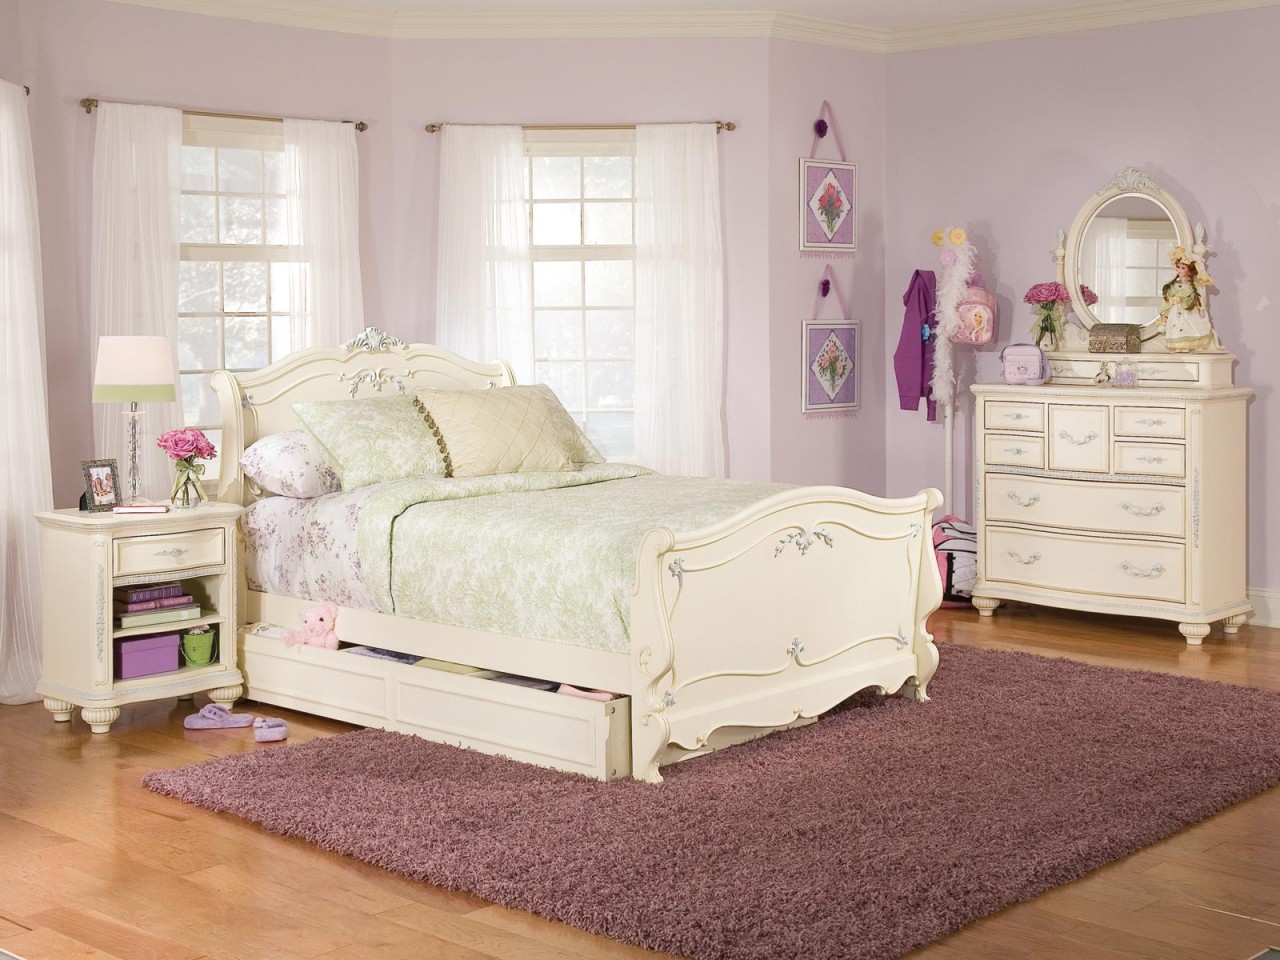 Girls Black Bedroom Set Kids Twin Bed Furniture Bedroom Sets For Teen Girls